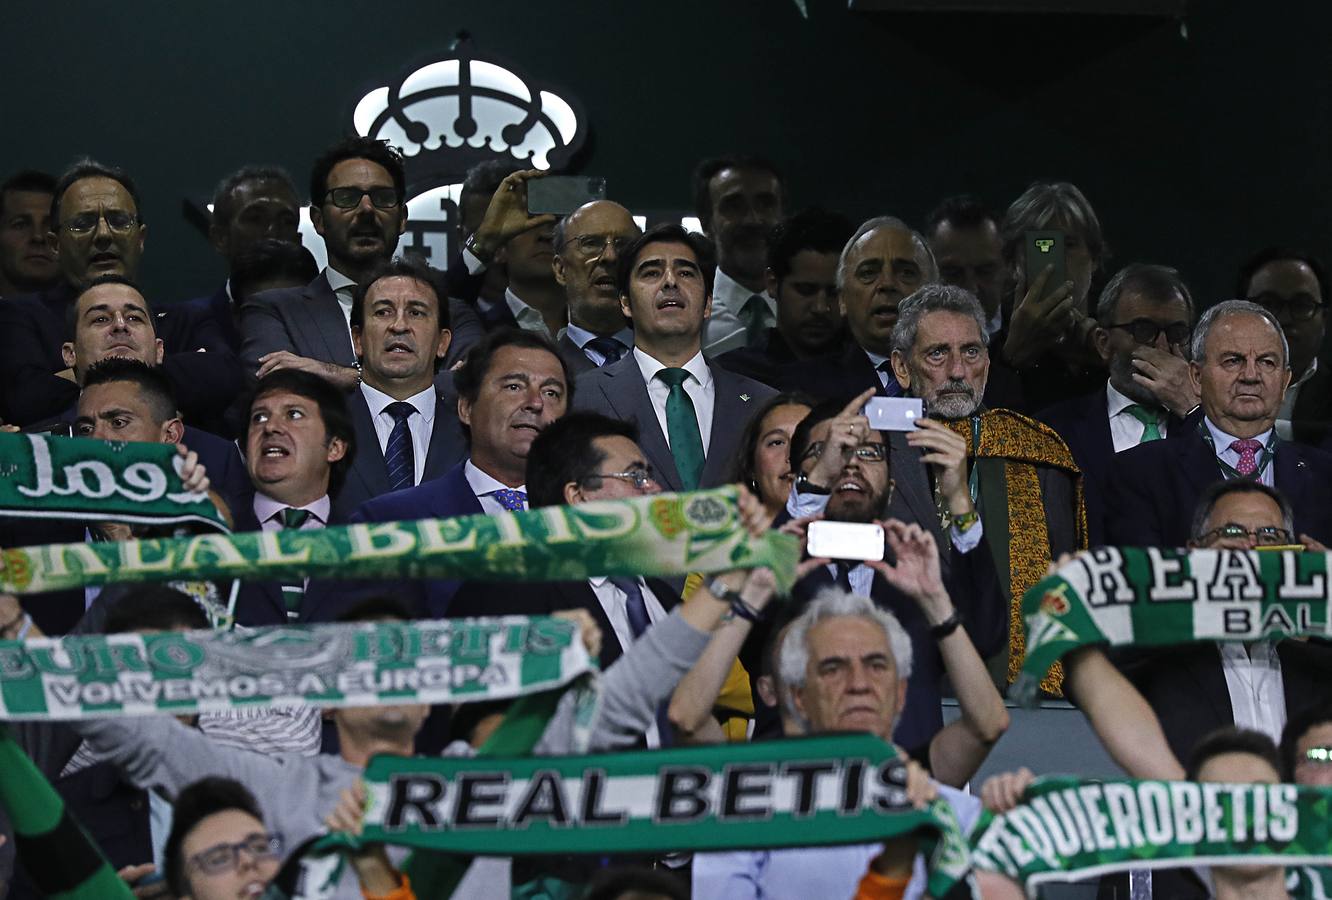 Las mejores imágenes del Real Betis - Celta de Vigo (2-1)